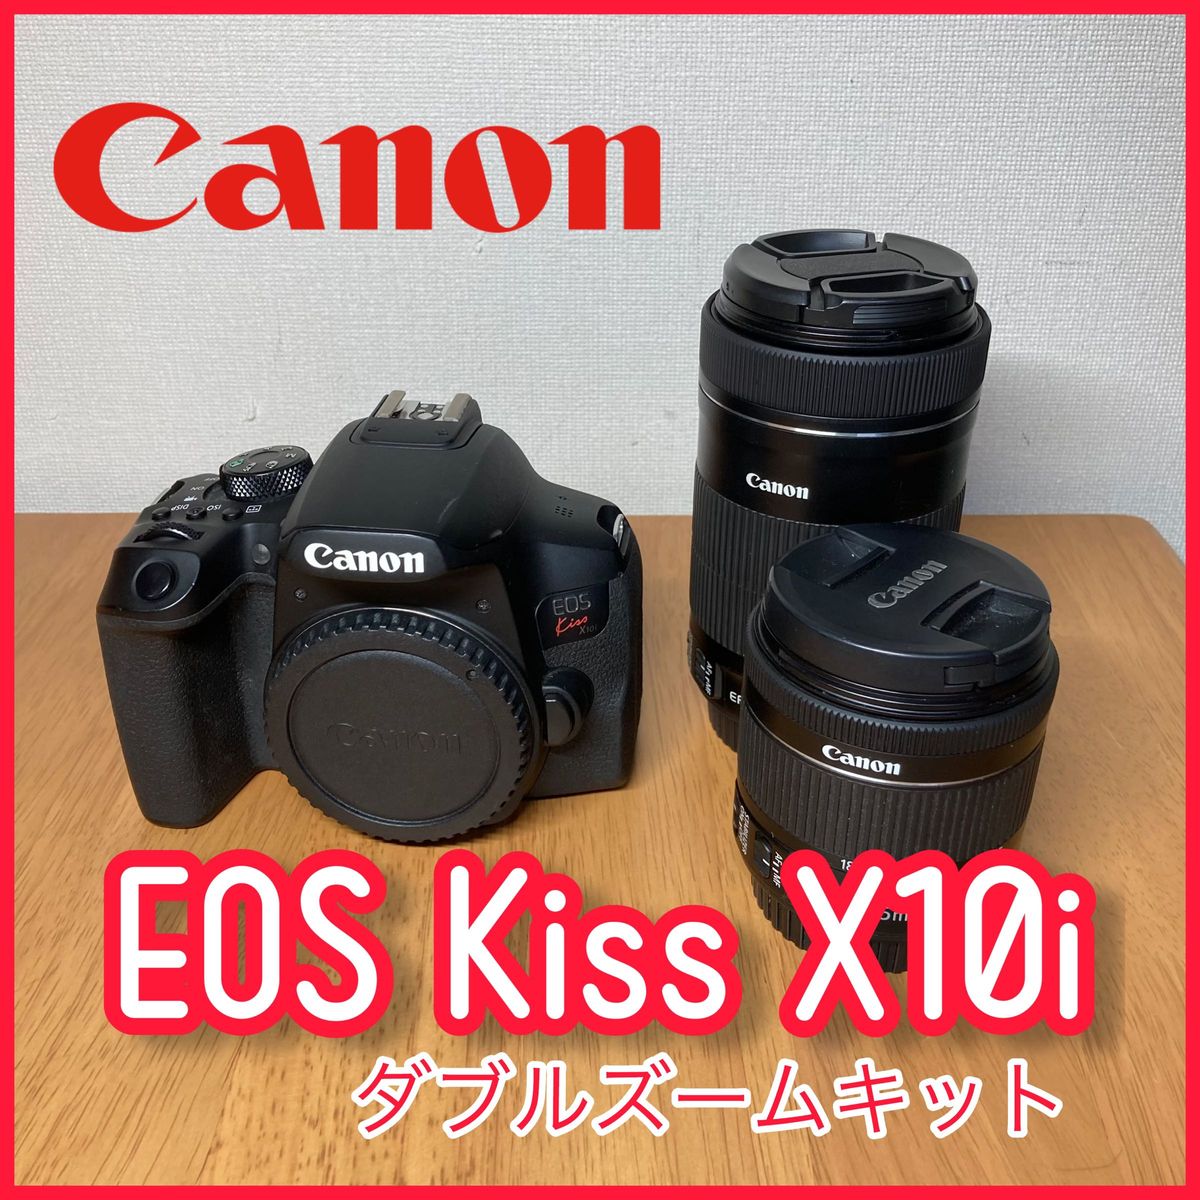 キヤノン canon EOS Kiss x10i ダブルズームキット【値下げ交渉大歓迎!!!値下げ後の即買い超良】